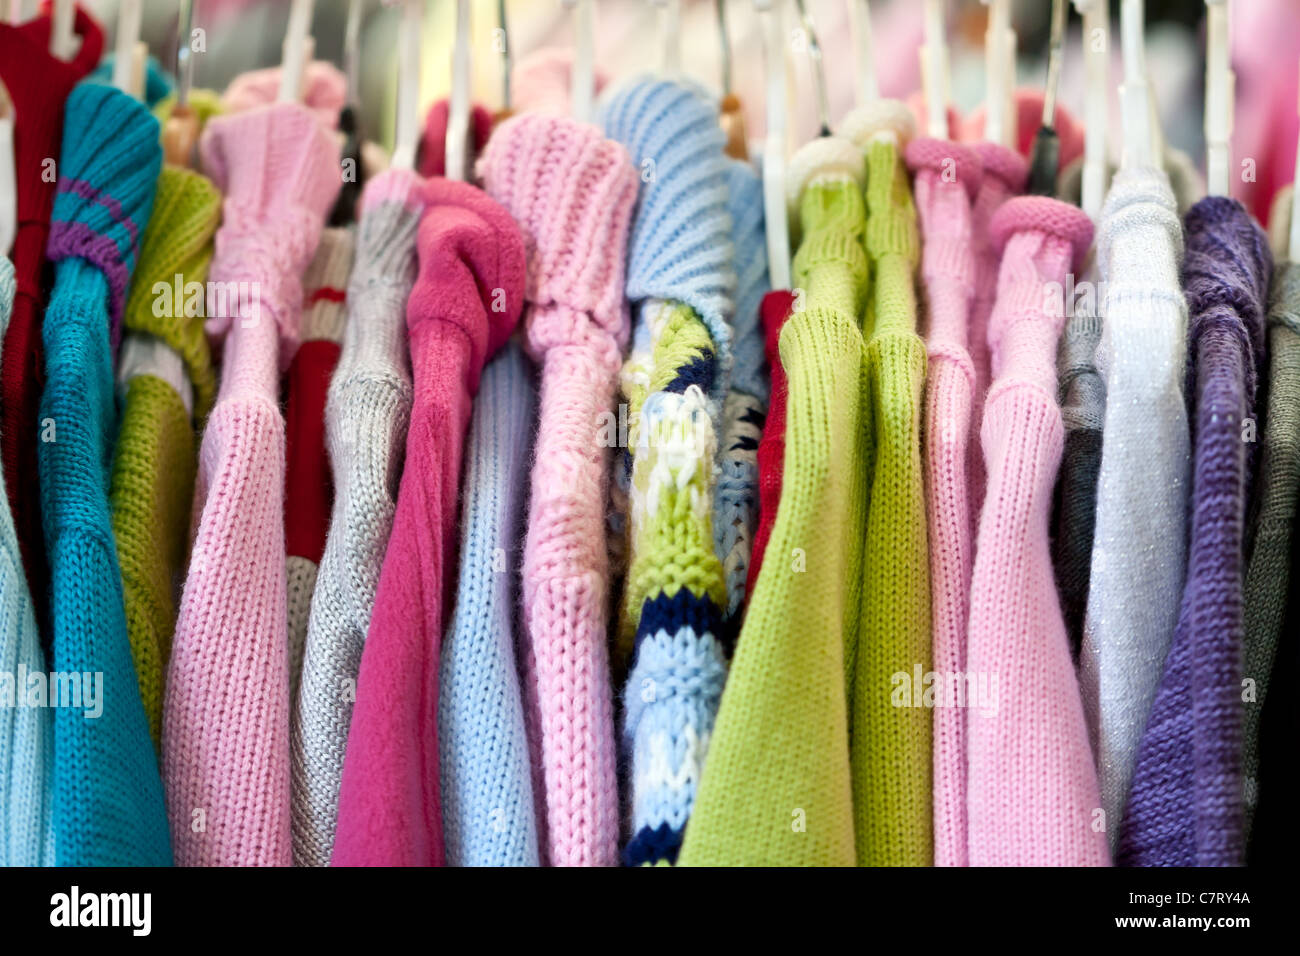 Indumenti a maglia immagini e fotografie stock ad alta risoluzione - Alamy